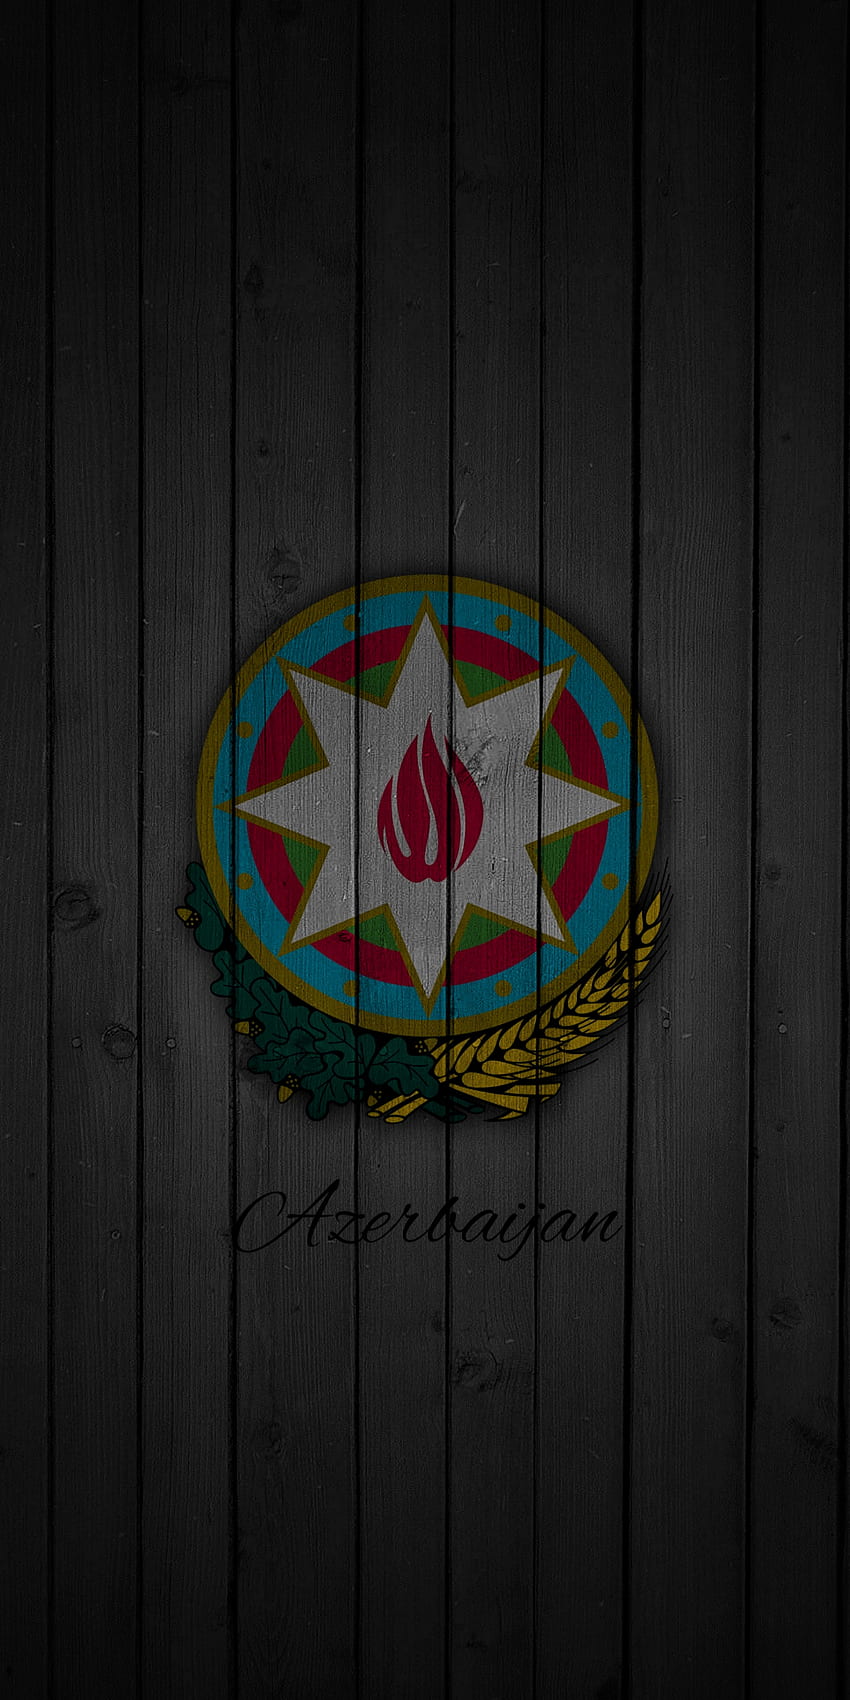 Gerb (Azərbaycan), Azerbaiyán, samsung, azerbaycan, android, diseño, iphone fondo de pantalla del teléfono